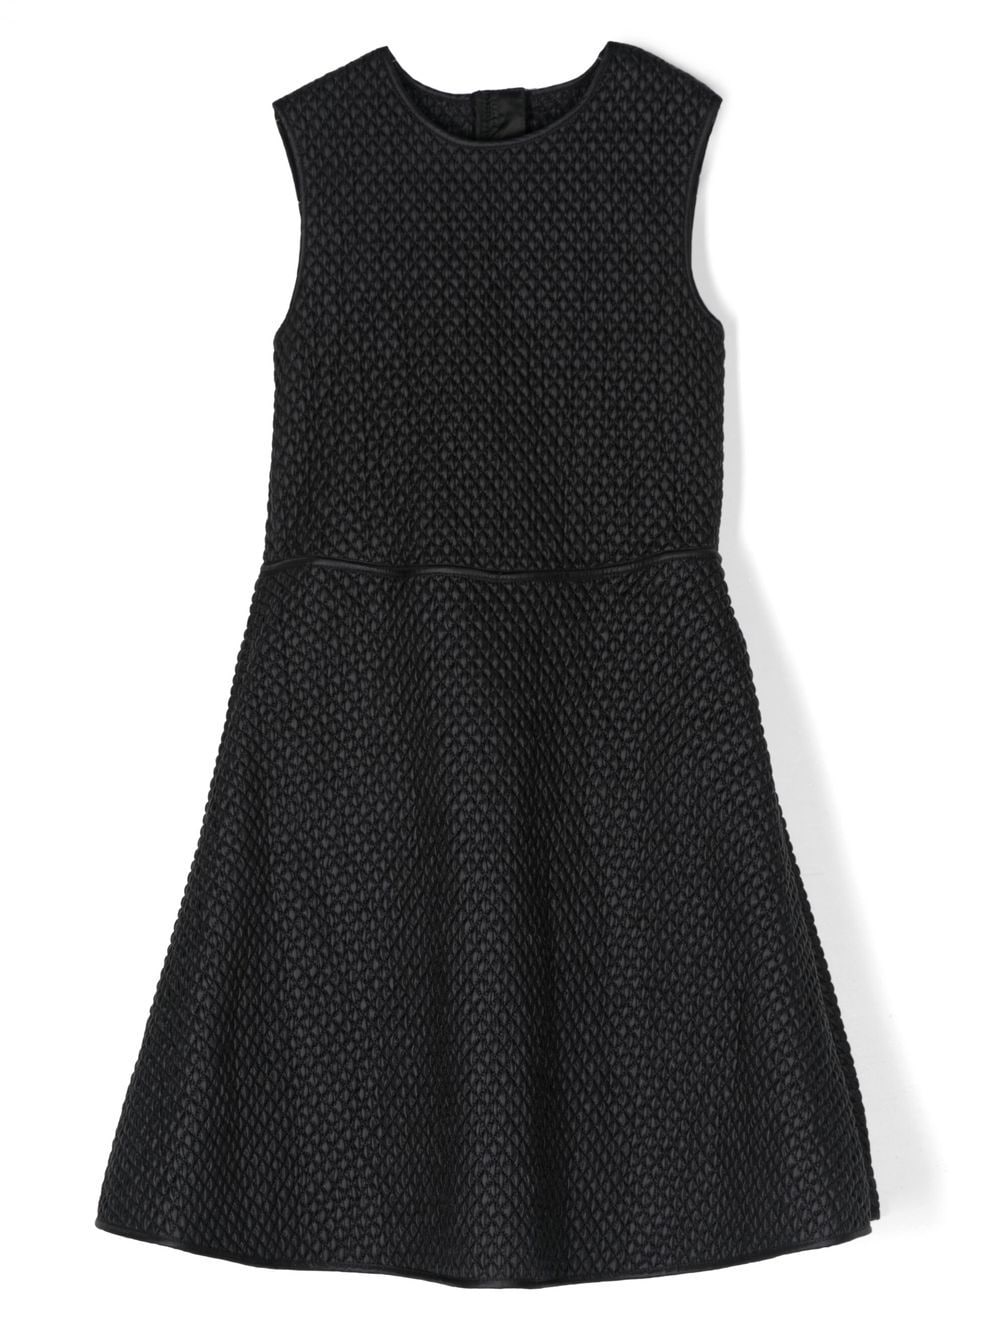 Moncler Enfant quilted sleeveless dress - Black von Moncler Enfant